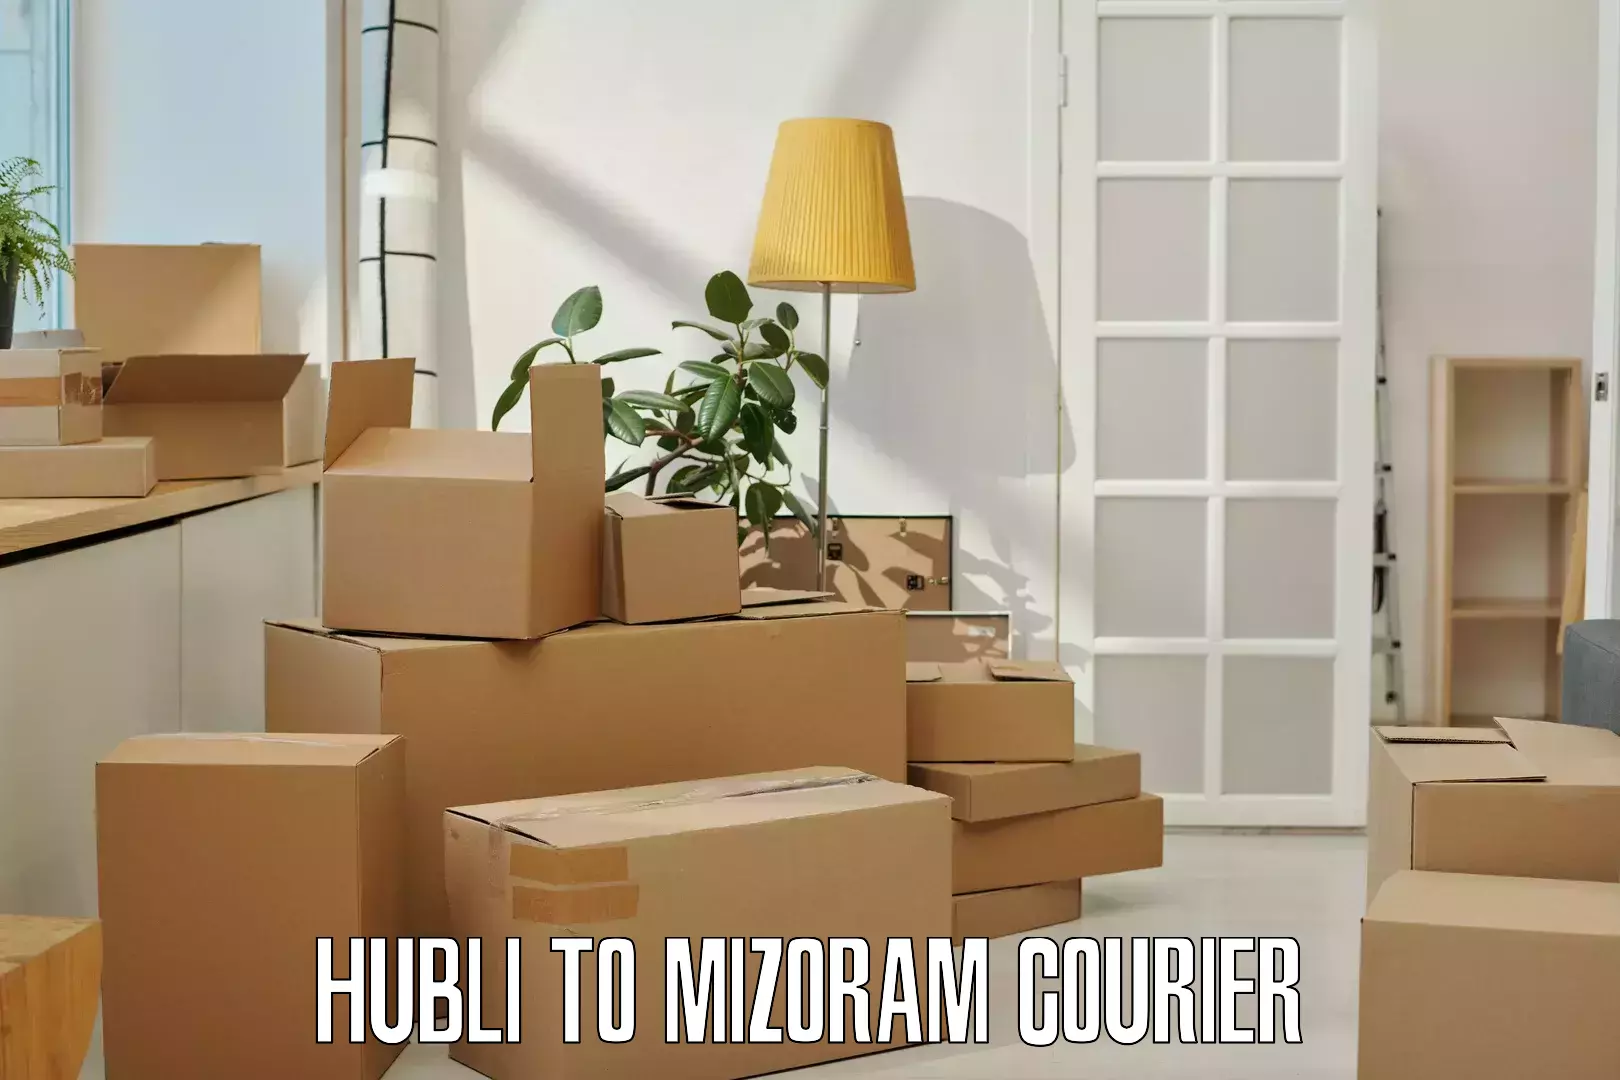 Logistics service provider Hubli to Mizoram